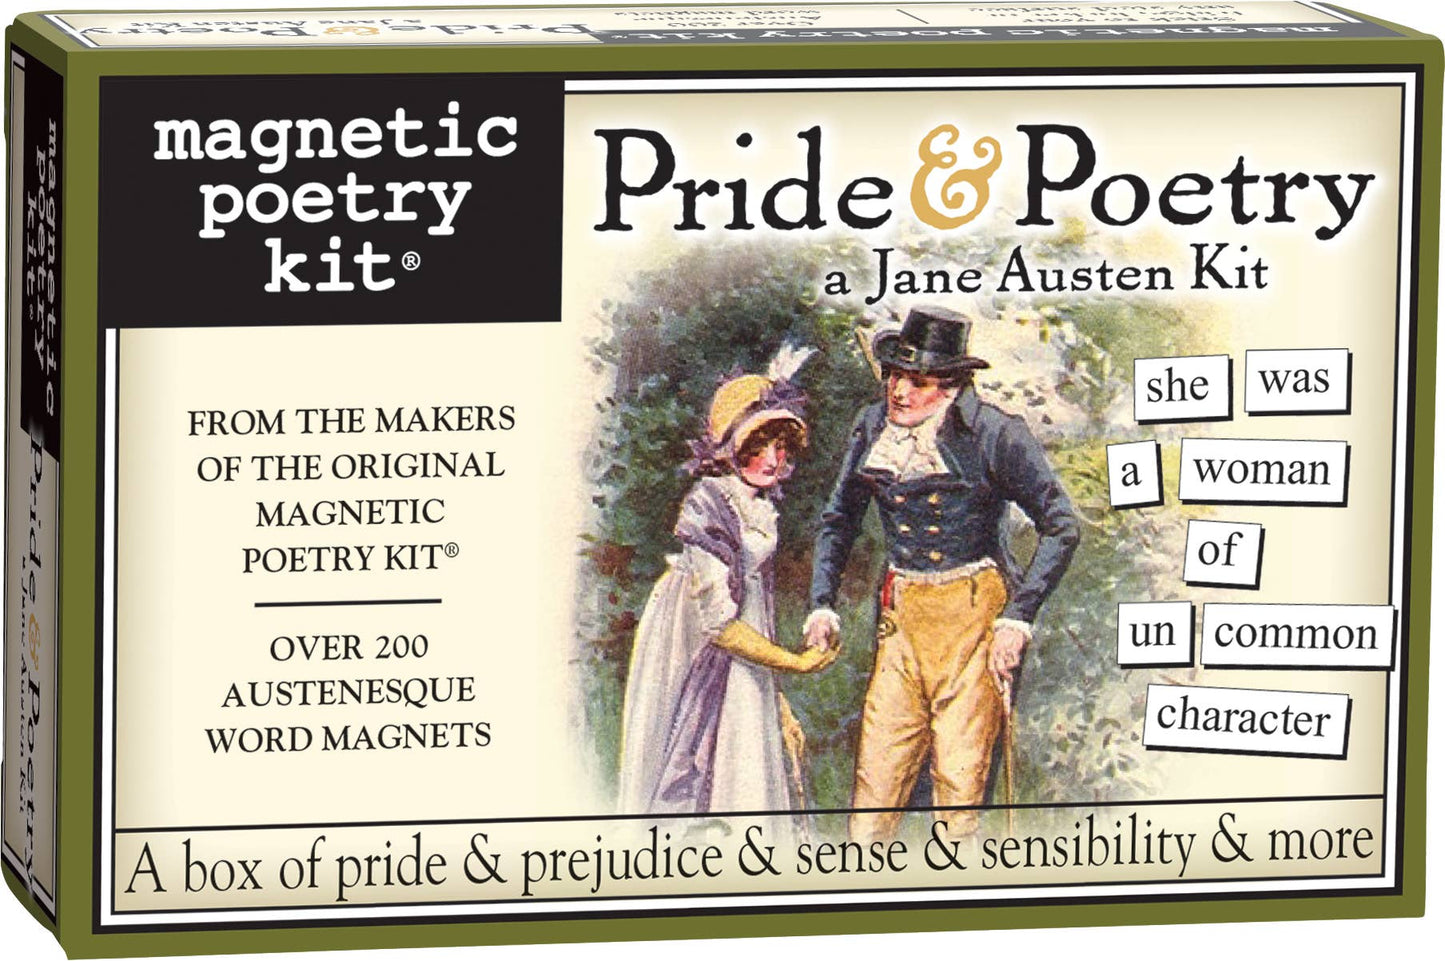 Pride & Poetry - Magnetic Poetry Kit